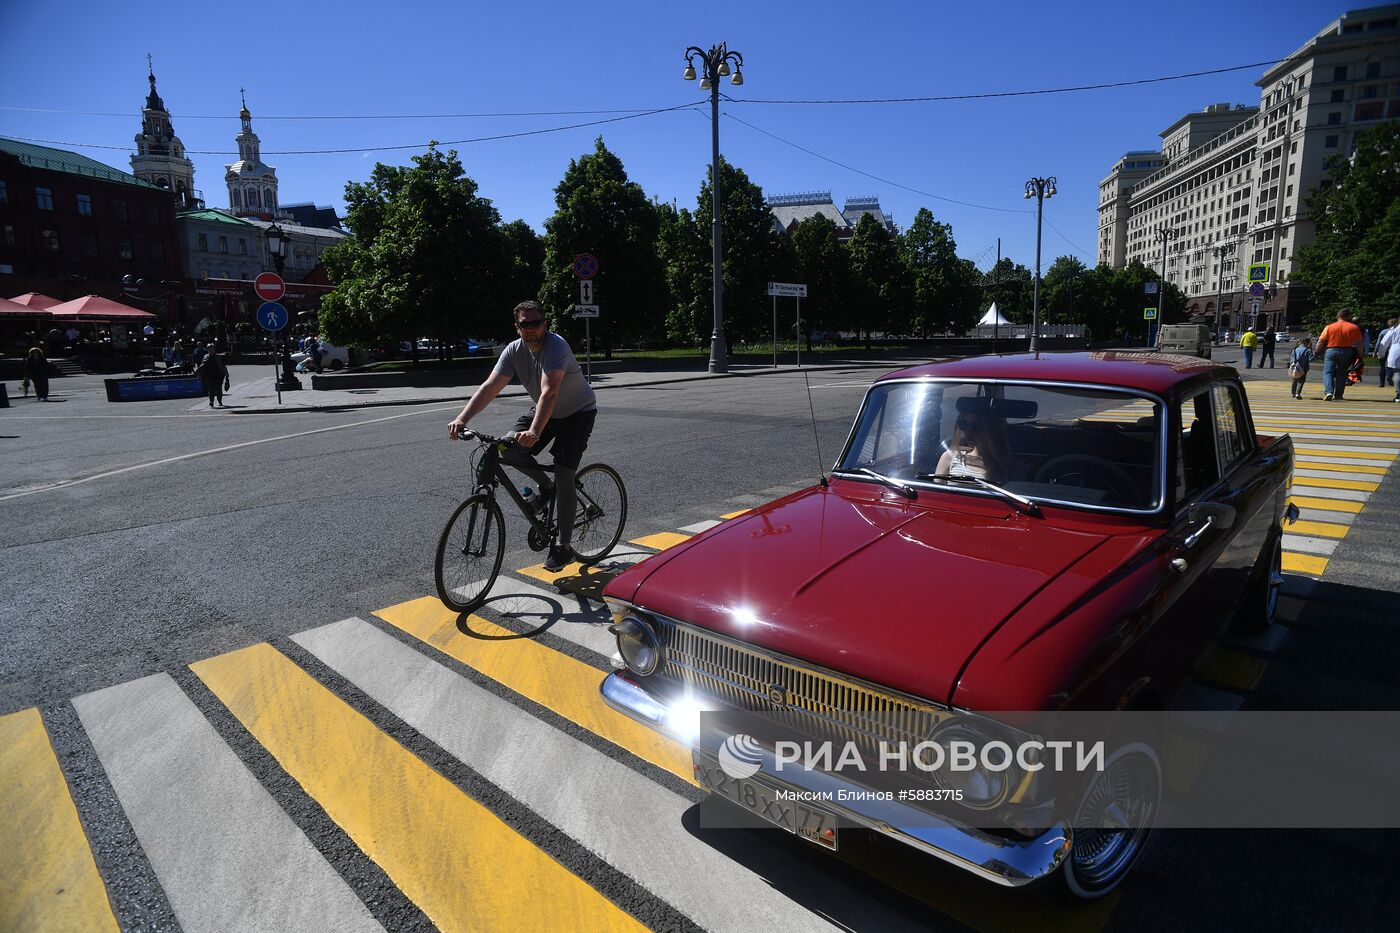 Ралли классических ретро-автомобилей в Москве